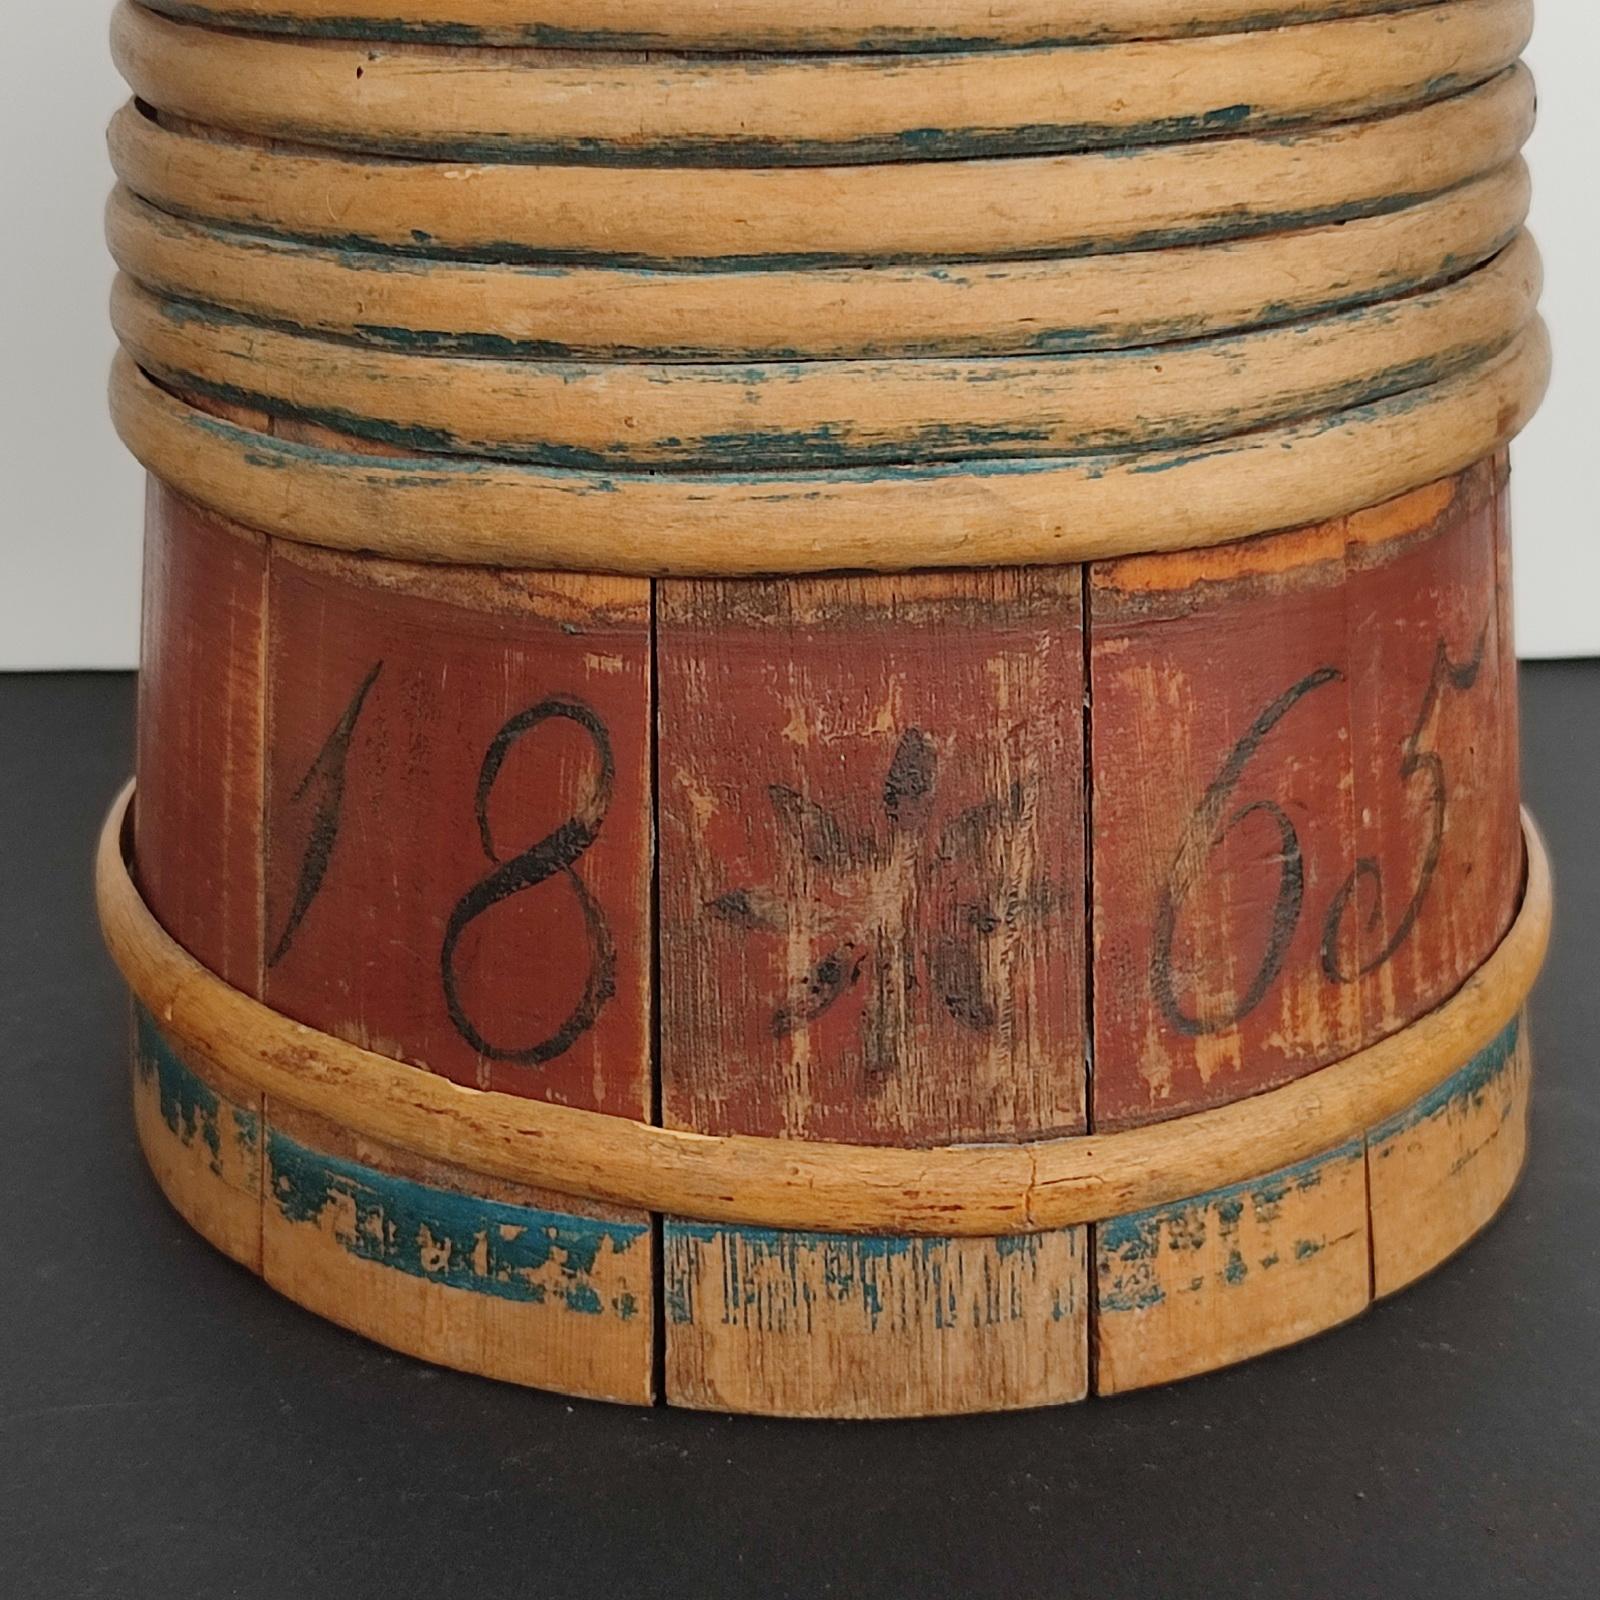 Norwegischer Holzkrug aus dem 19. Jahrhundert, bemalt mit Initialen und datiert 1865.
Holzkrug mit Deckel, hergestellt aus Dauben, die mit einer Banderole aus gespaltenen Ästen zusammengehalten werden. Die Deckel sind mit Scharnieren versehen.